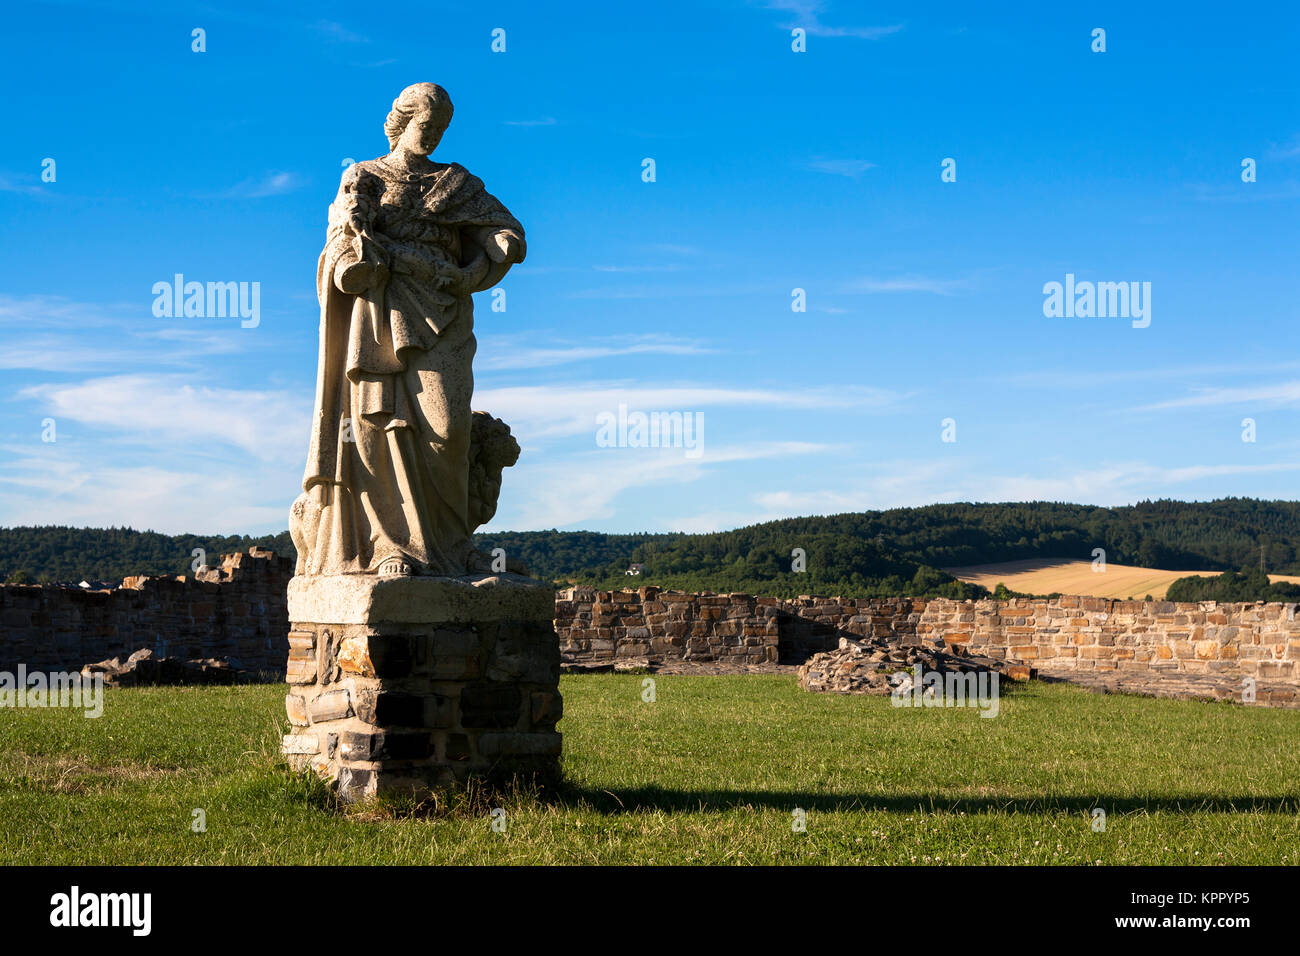 Germany, Sauerland region,  Arnsberg, statue at the ruined castle.  Deutschland, Sauerland, Arnsberg, Statue an der Schlossruine. Stock Photo